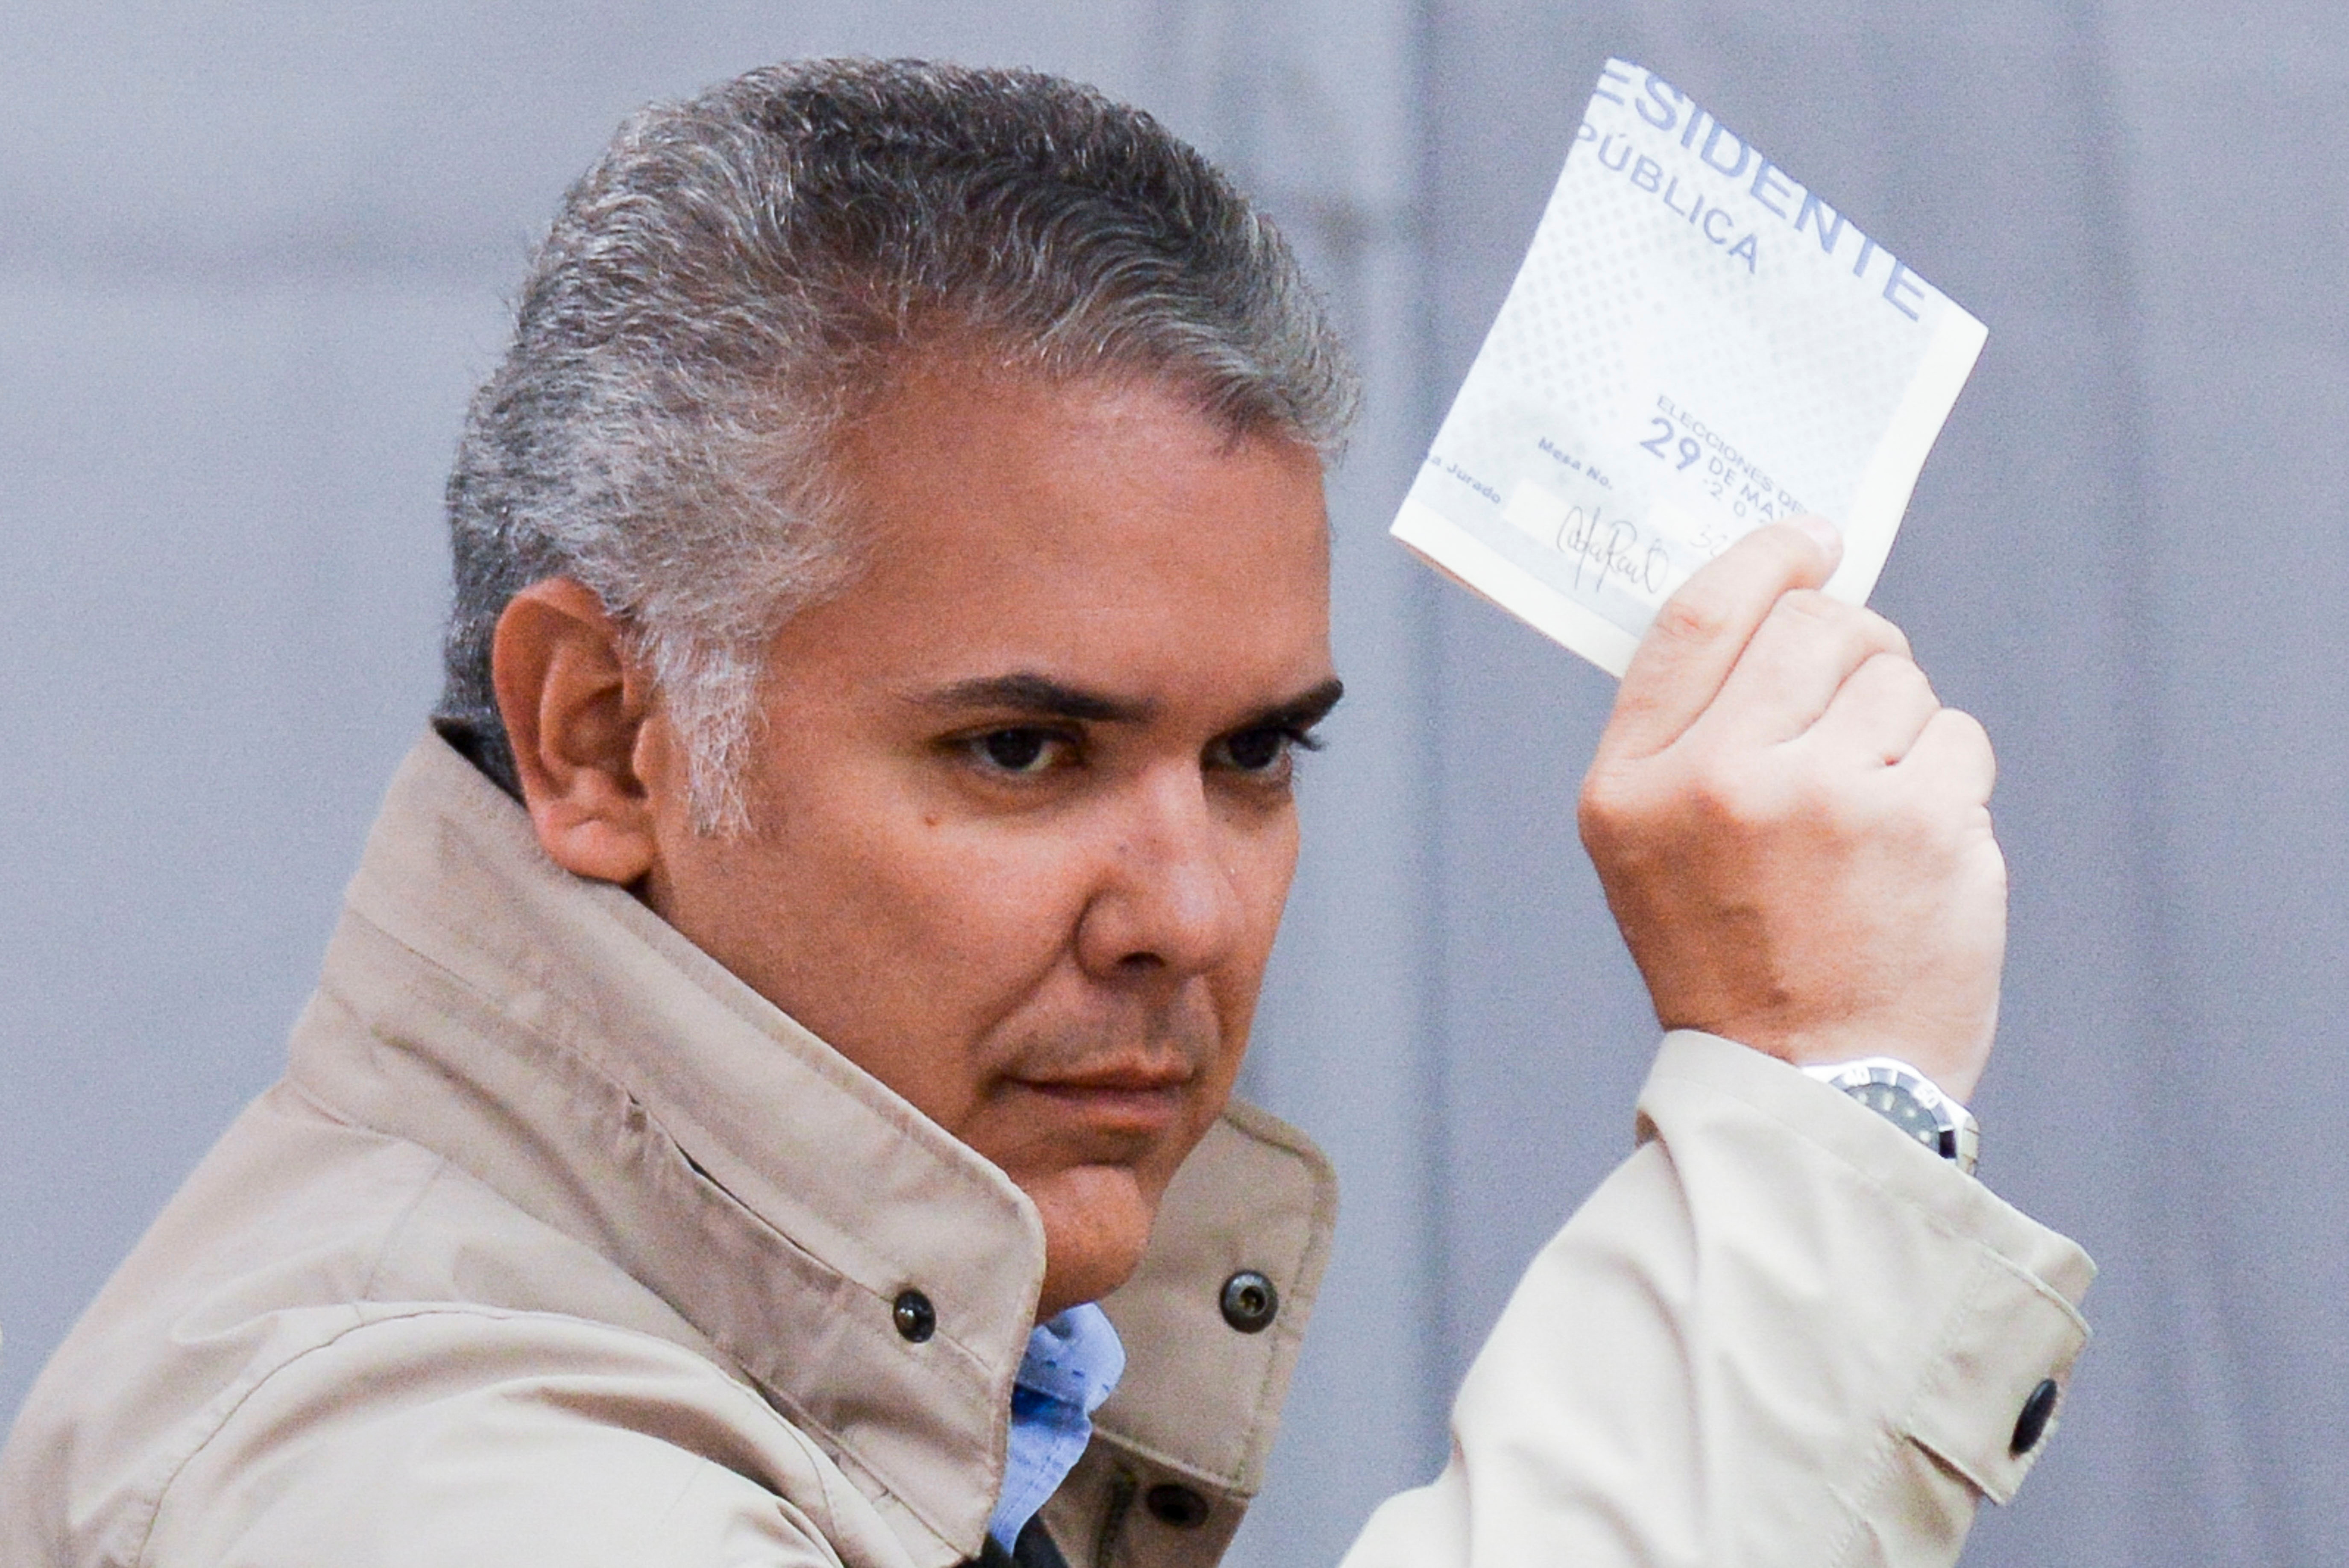 El presidente de Colombia, Iván Duque, deposita su voto en un colegio electoral durante la primera vuelta de las elecciones presidenciales en Bogotá, Colombia, el 29 de mayo de 2022. REUTERS/Vannessa Jiménez